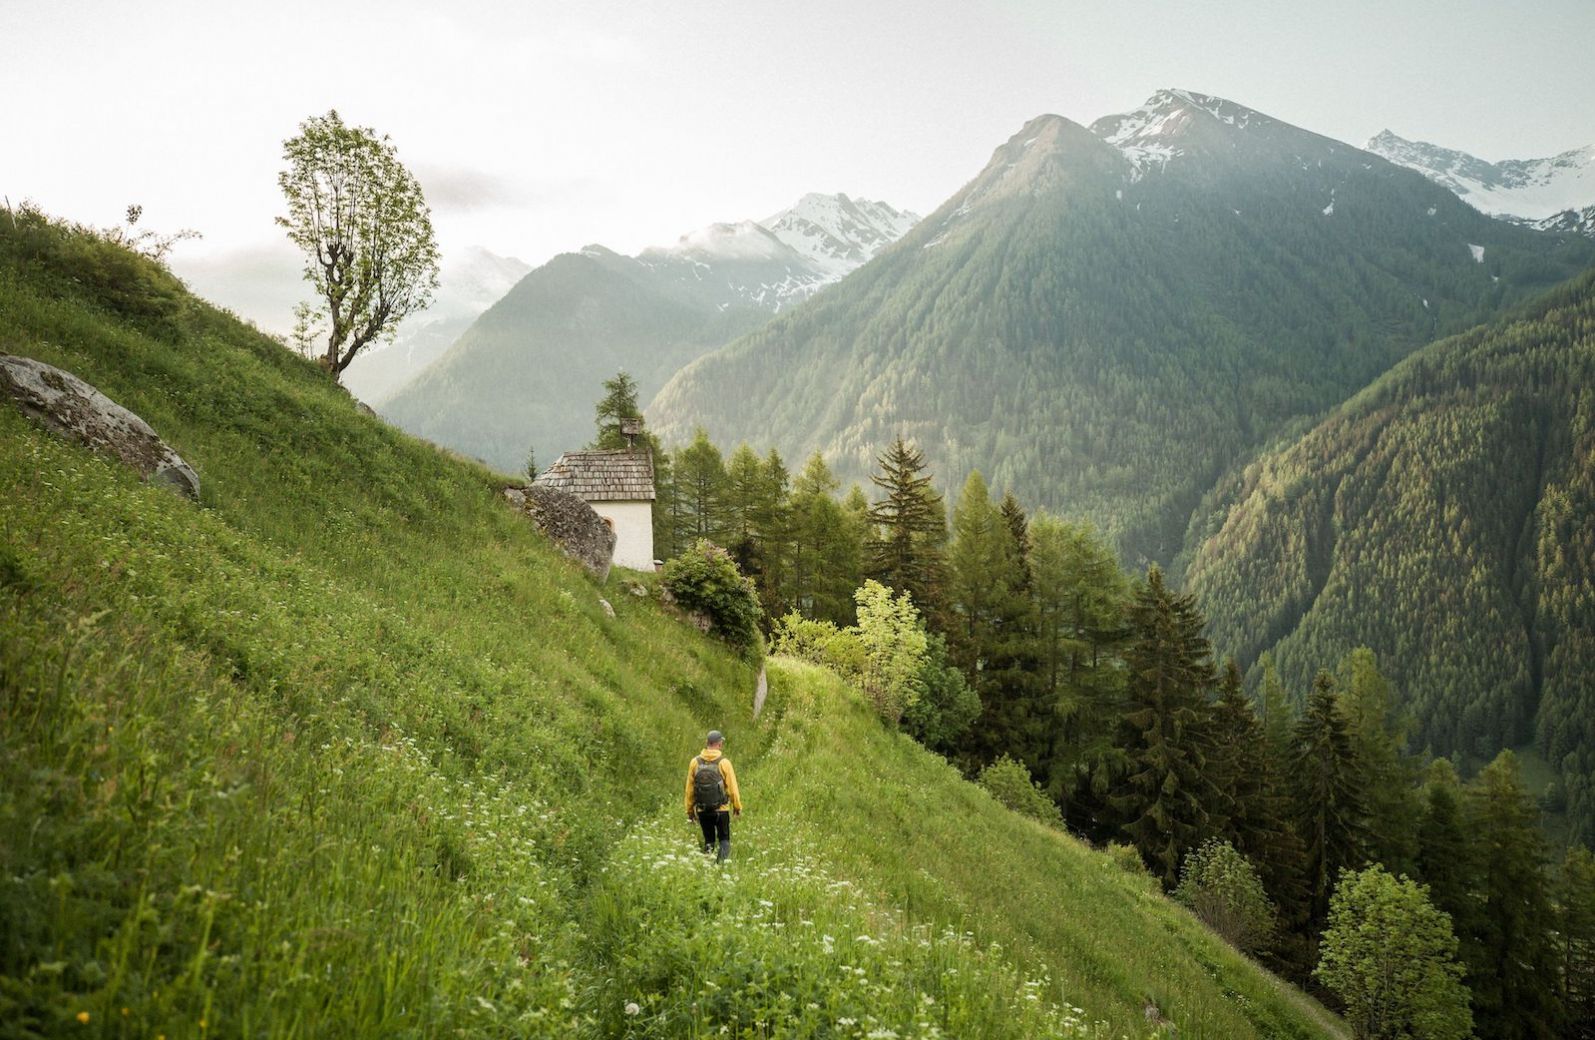 Ahrntal, Valle Aurina, South Tyrol, Italy